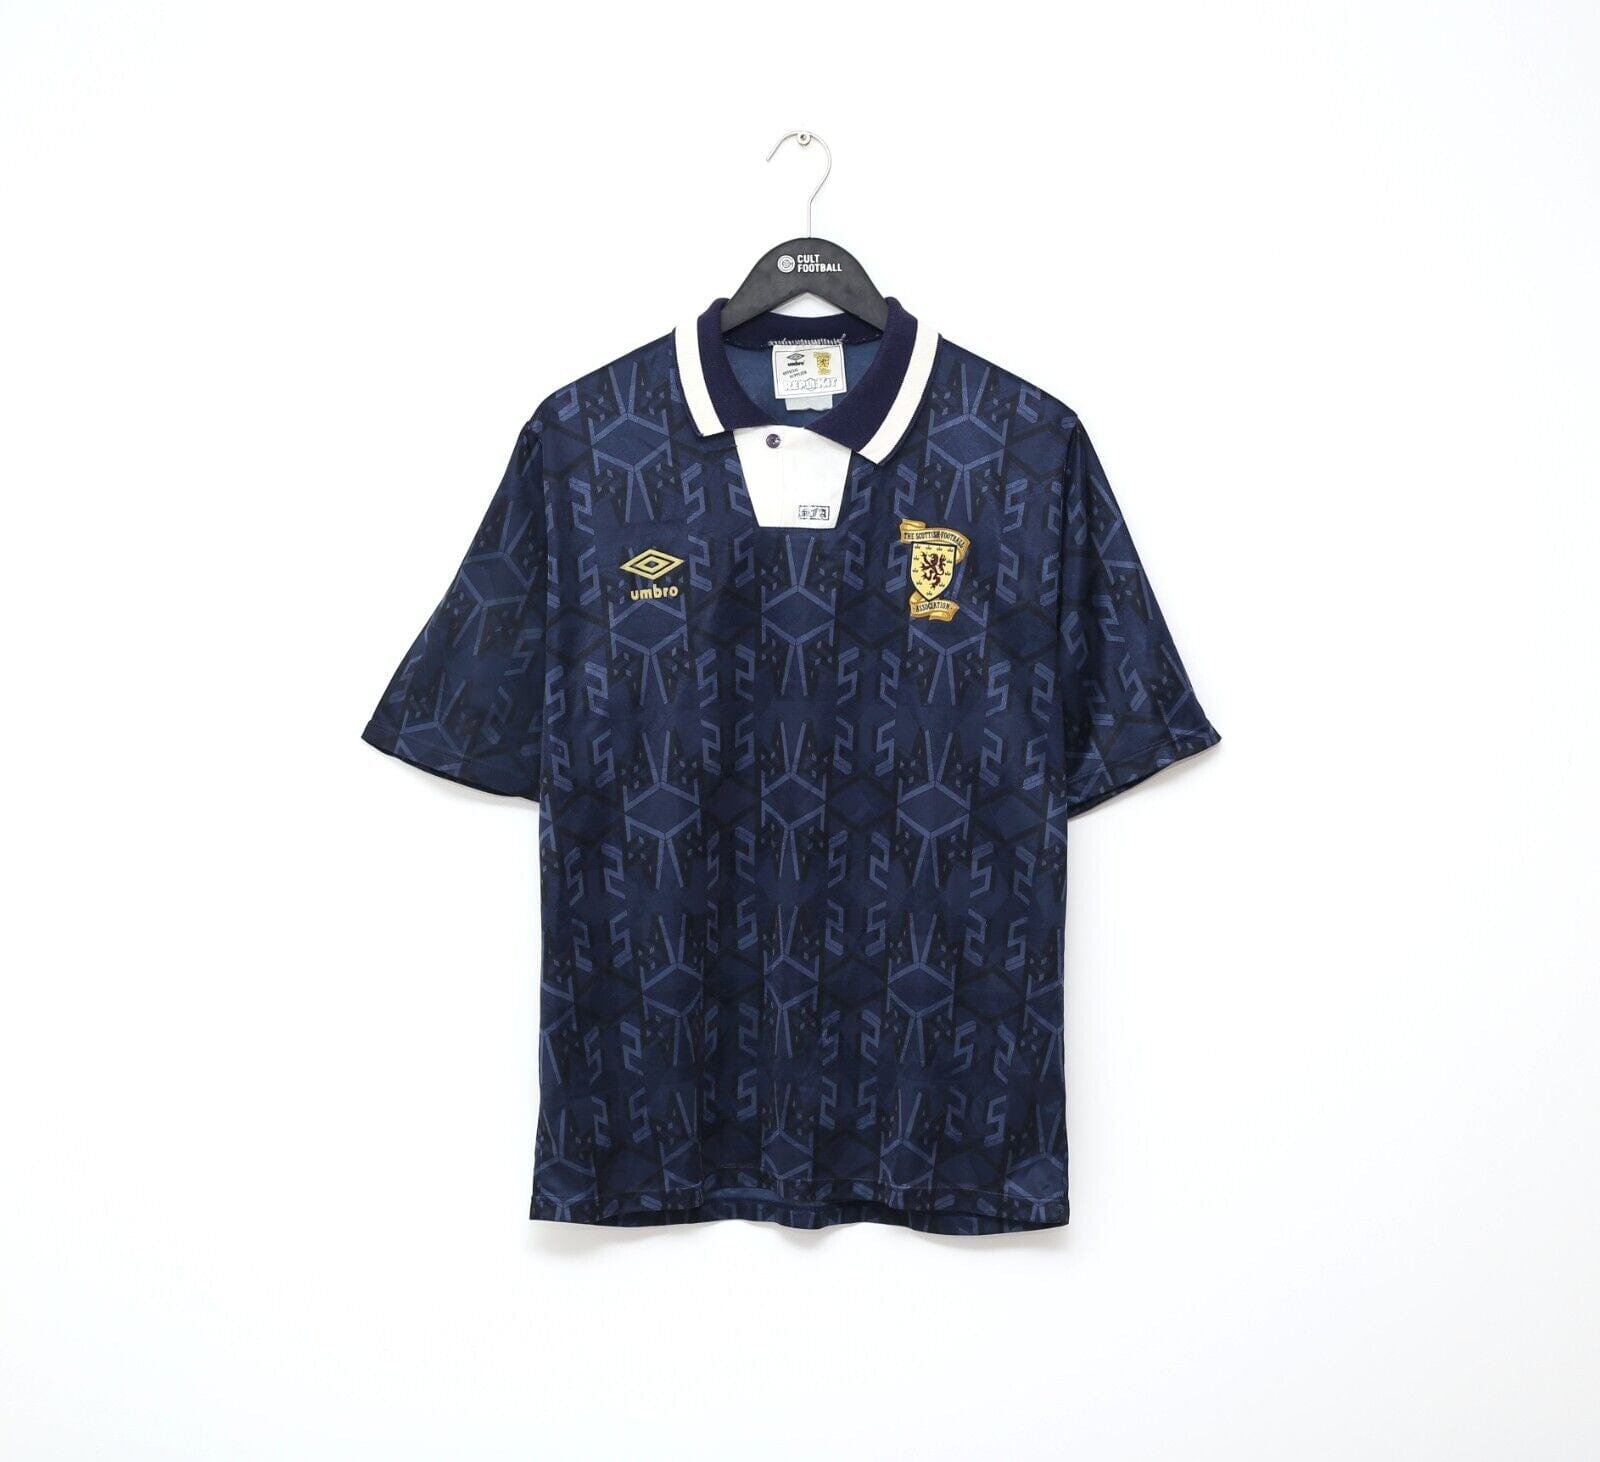 Vintage RARE Brazil #9 1992 1993 Umbro Football Shirt Soccer